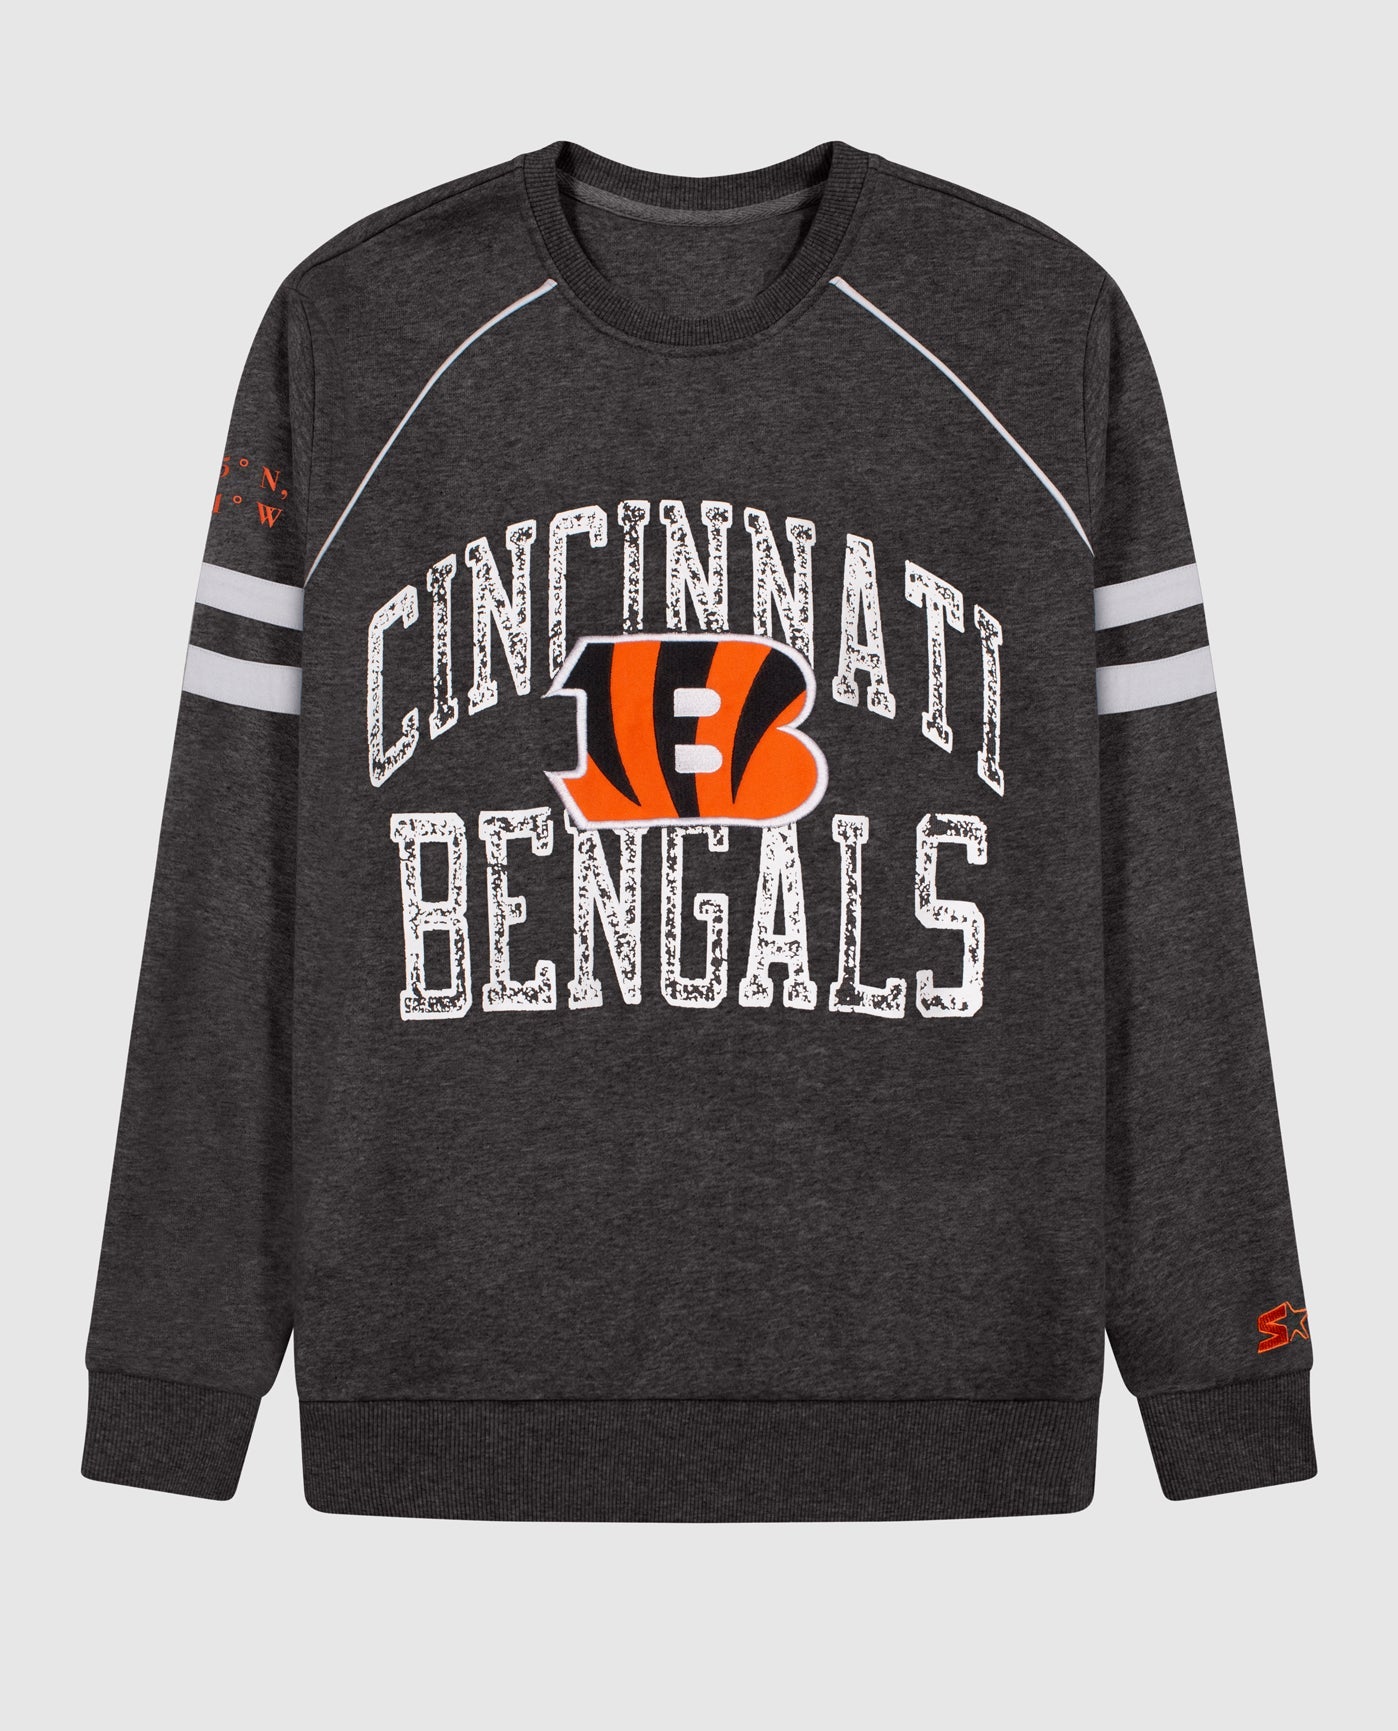 Cincinnati Bengals Sweatshirt, Bengals Sweatshirt, Cincinnati Bengals  Crewneck